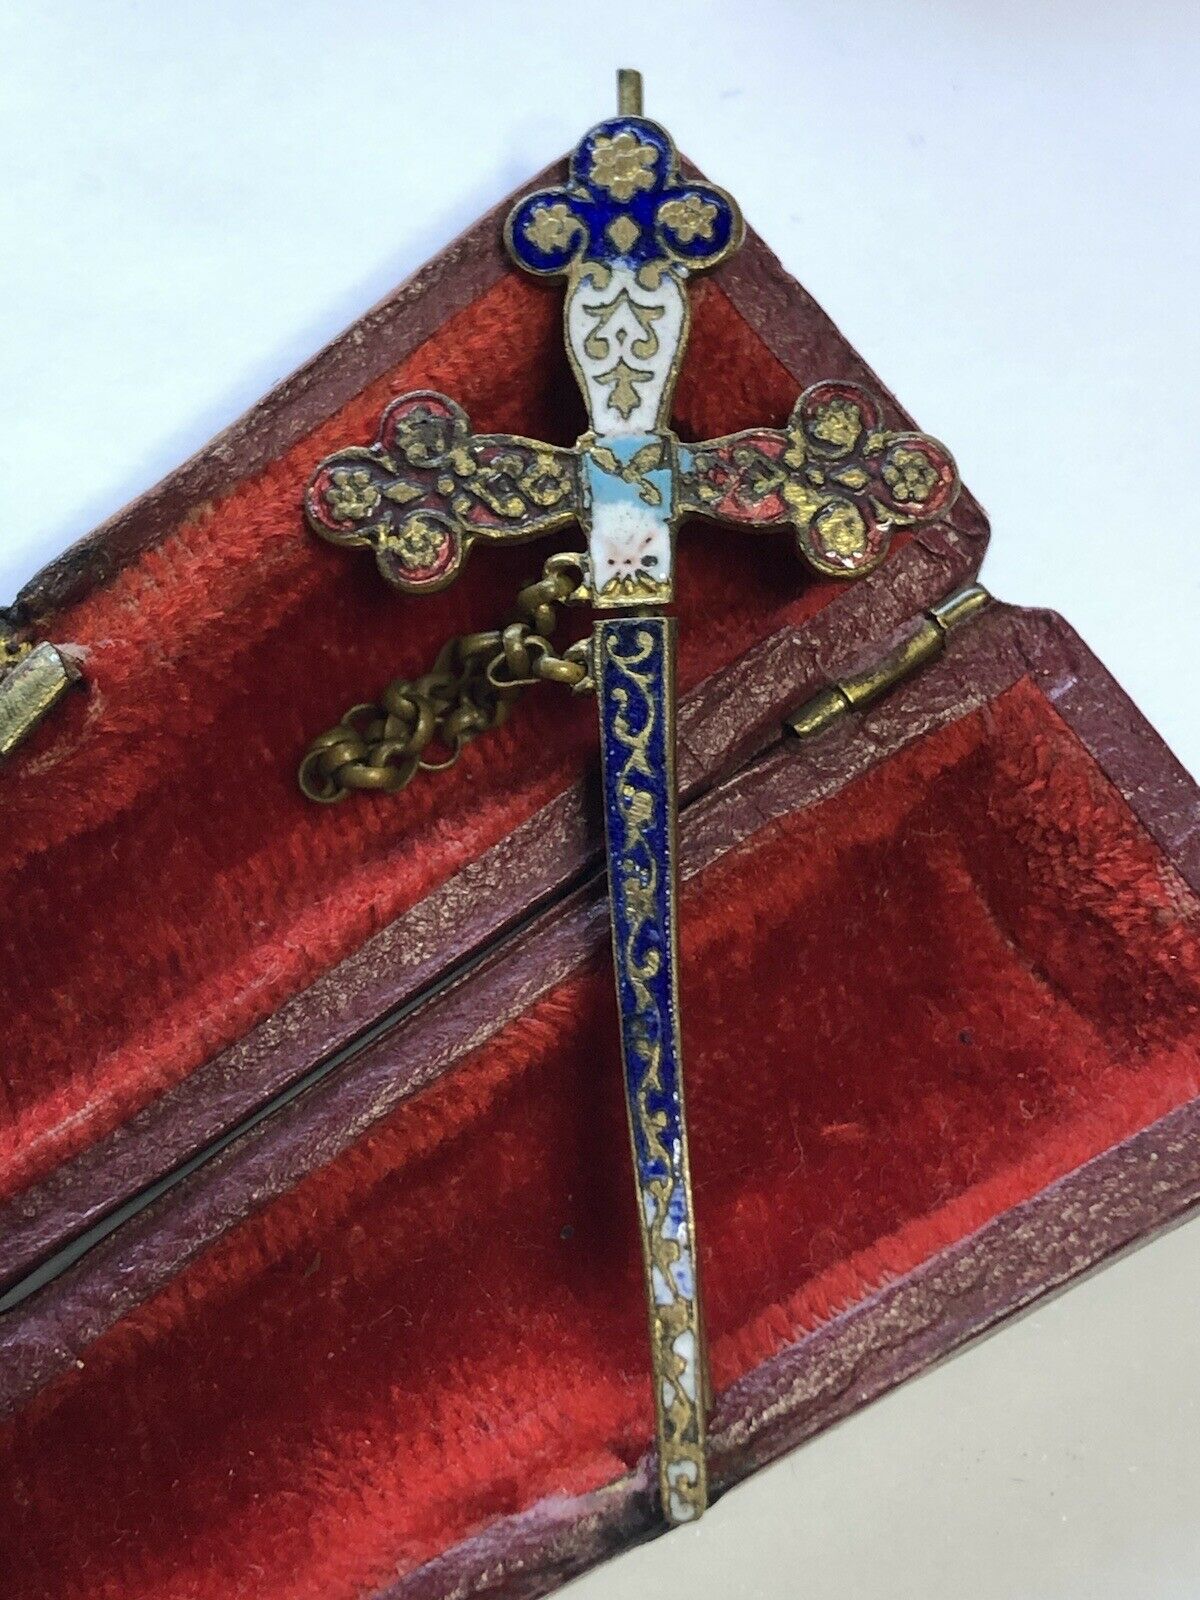 Vintage Enamel Sword Scabbard Stick Pin Brooch Lapel